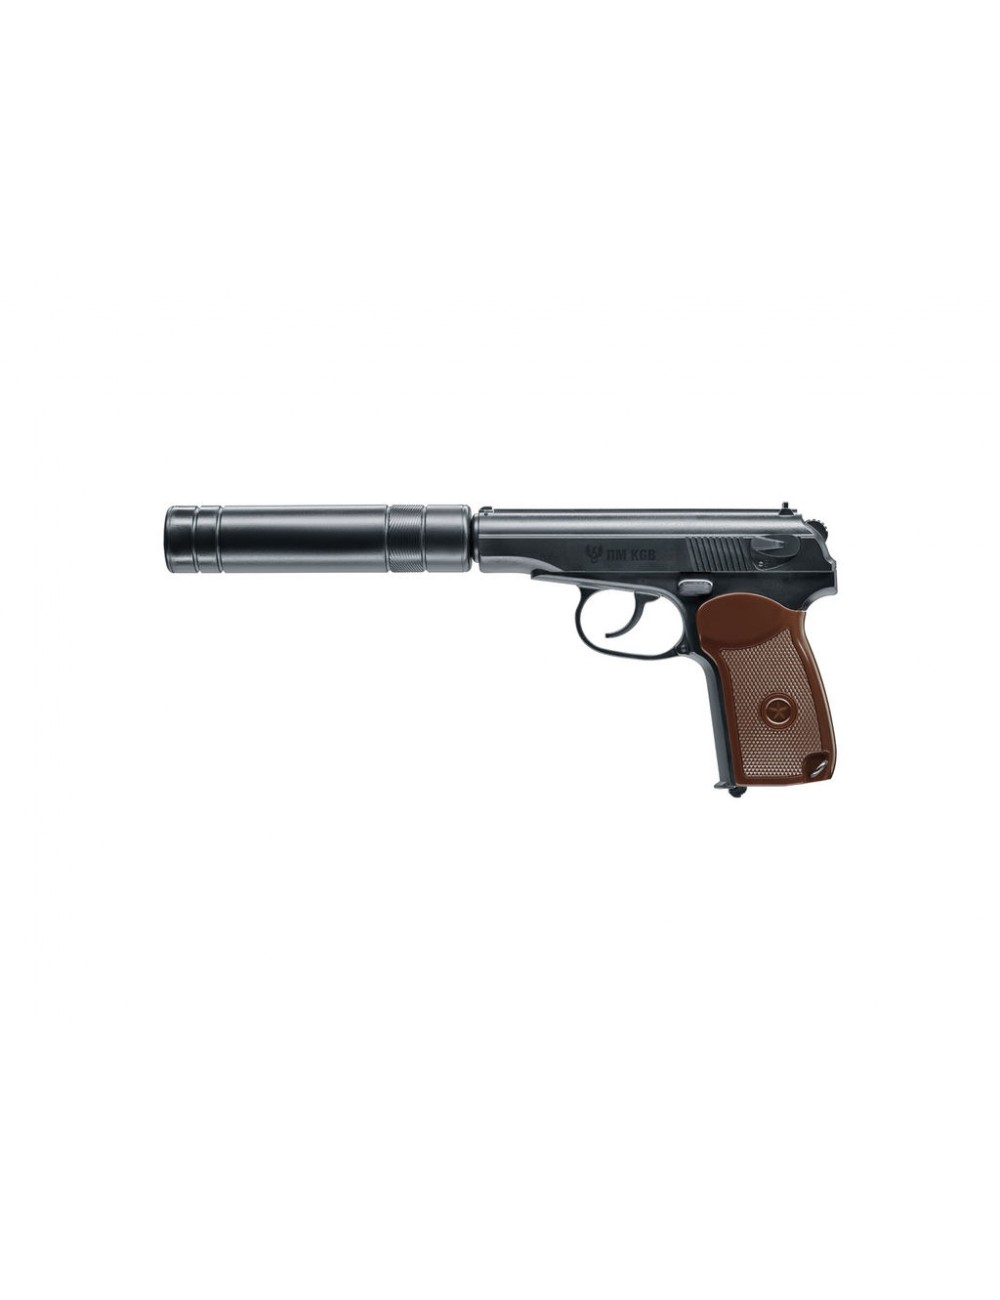 Pistola CO2 Walther ▷CP88 Full Metal 3,5 negra 4,5mm Pellet (.177 in)